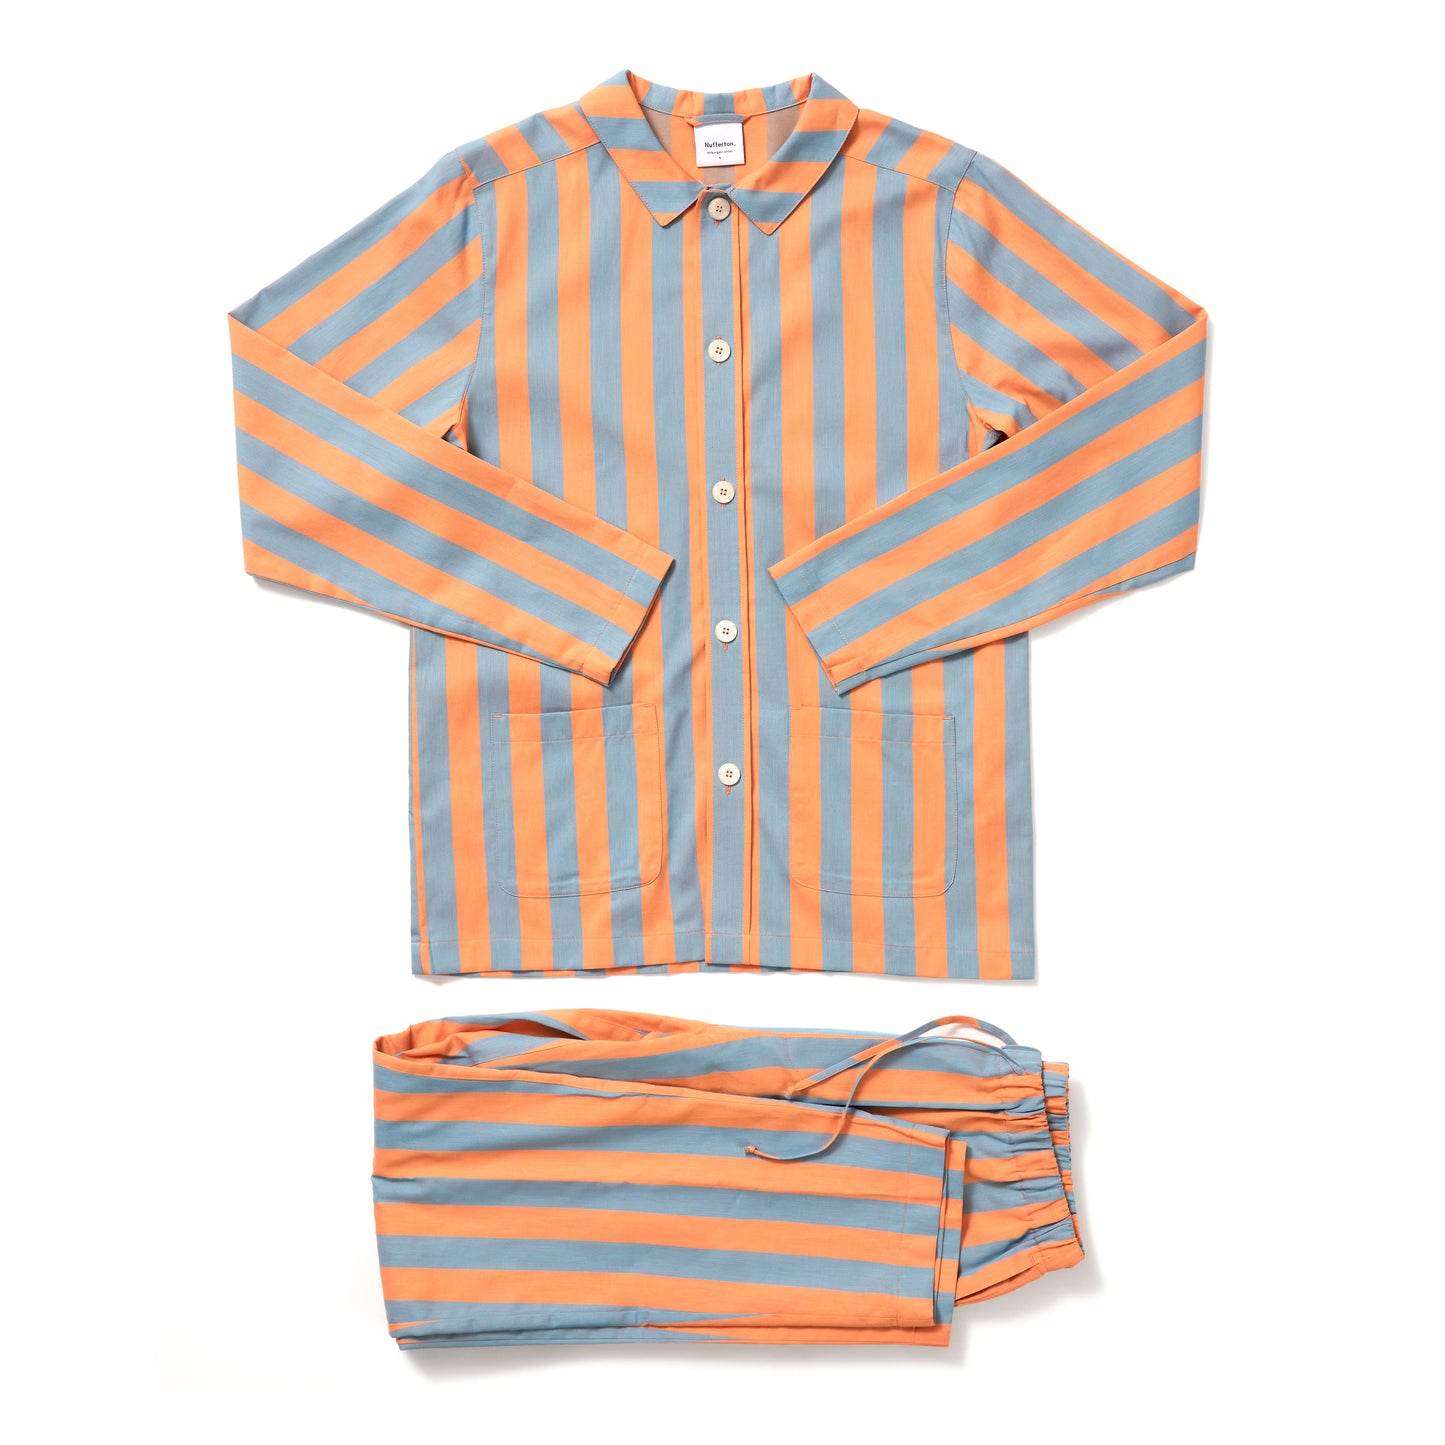 Uno Stripe Orange & Blue Pyjama Pant